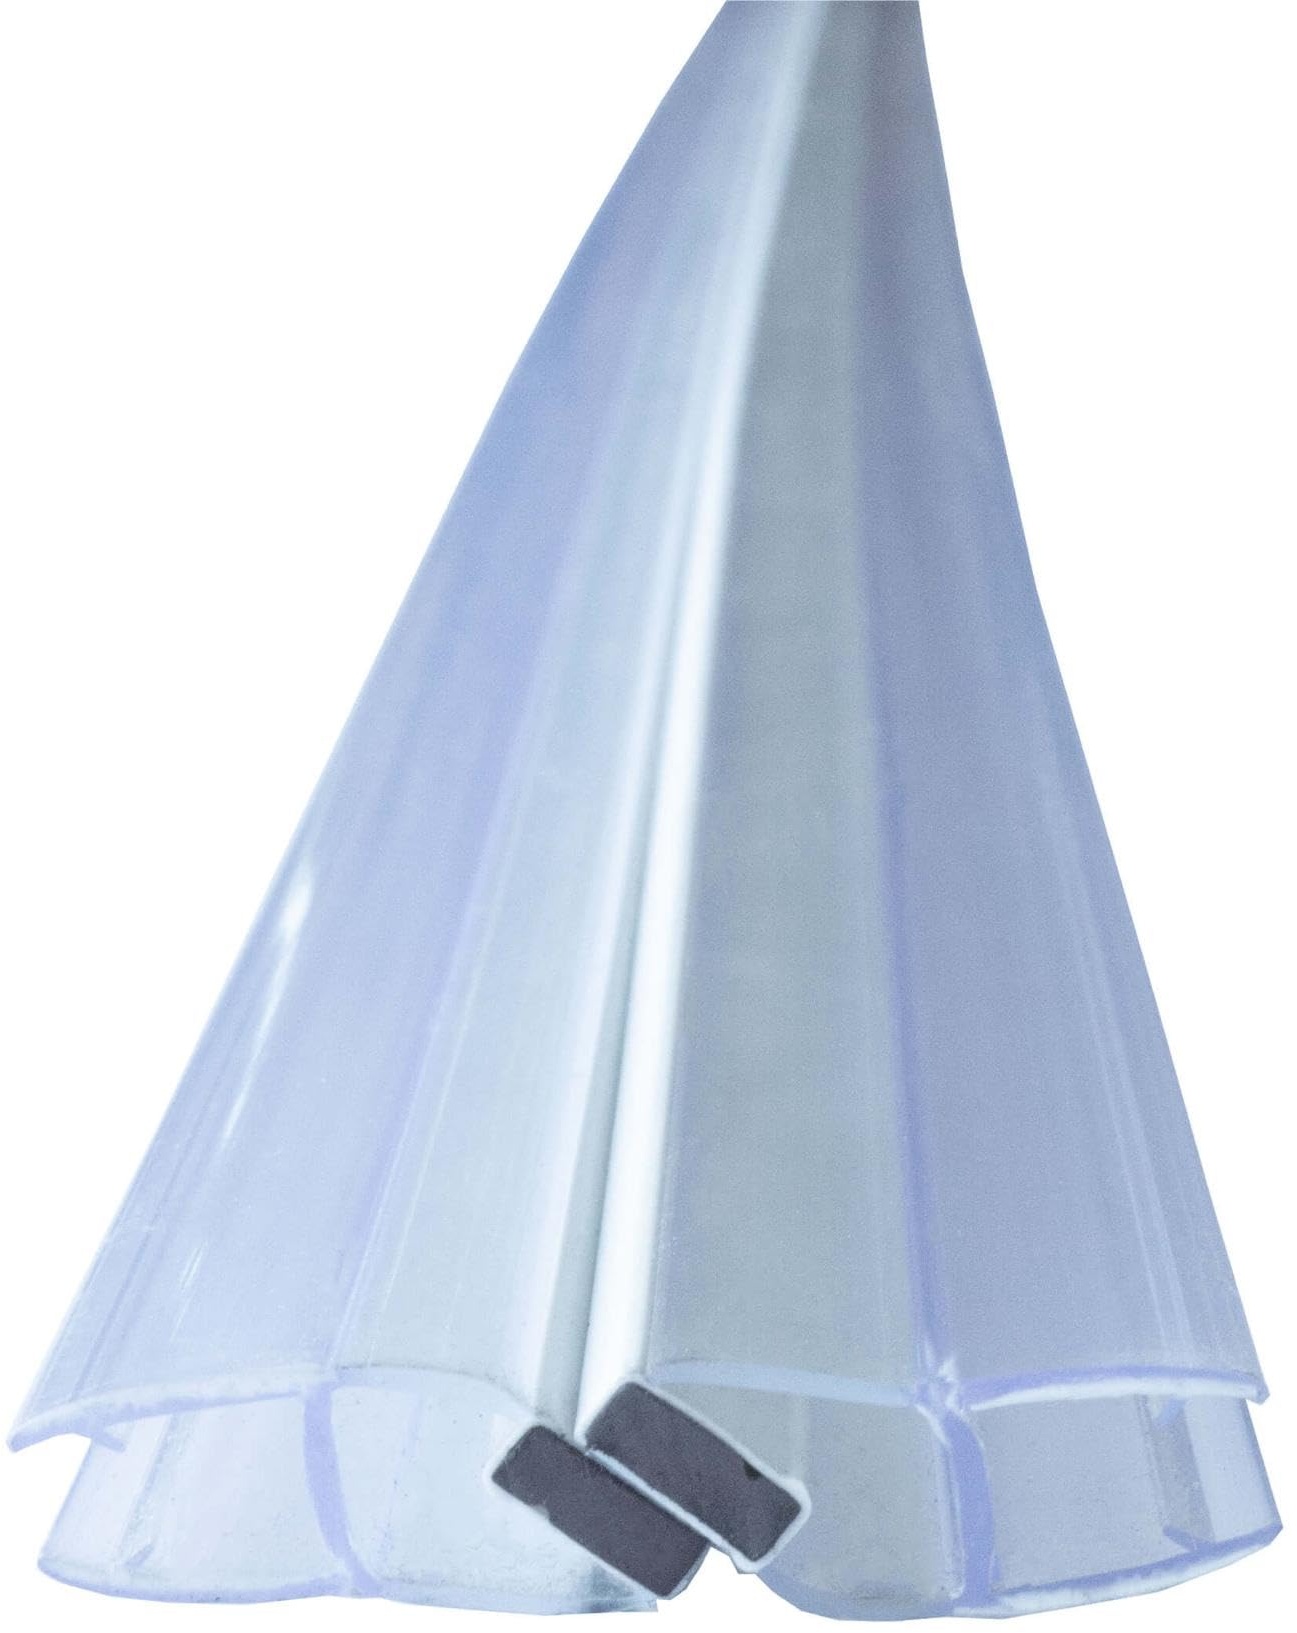 Duschdichtung Magnetdichtung für Duschtüren, 2m Transparent 6mm Glasstärke Schließwinkel von 90 & 180 Grad, versetzt, Schiebetür, einseitige Öffnung